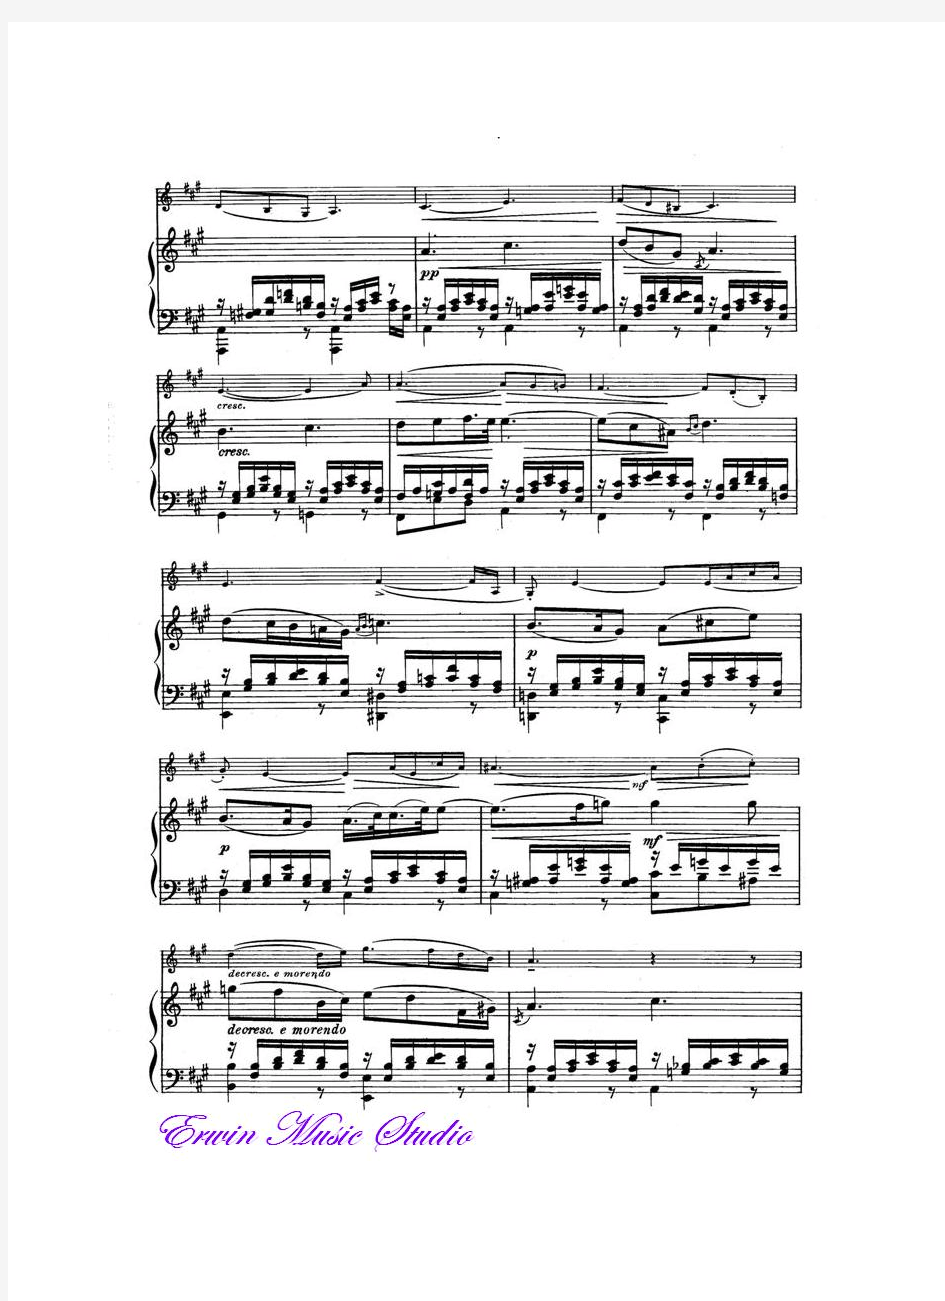 Piano弗朗兹舒柏特《柔板》作品.166.小提琴曲谱 钢琴伴奏曲谱FranzSchubertAdagiolOp.166